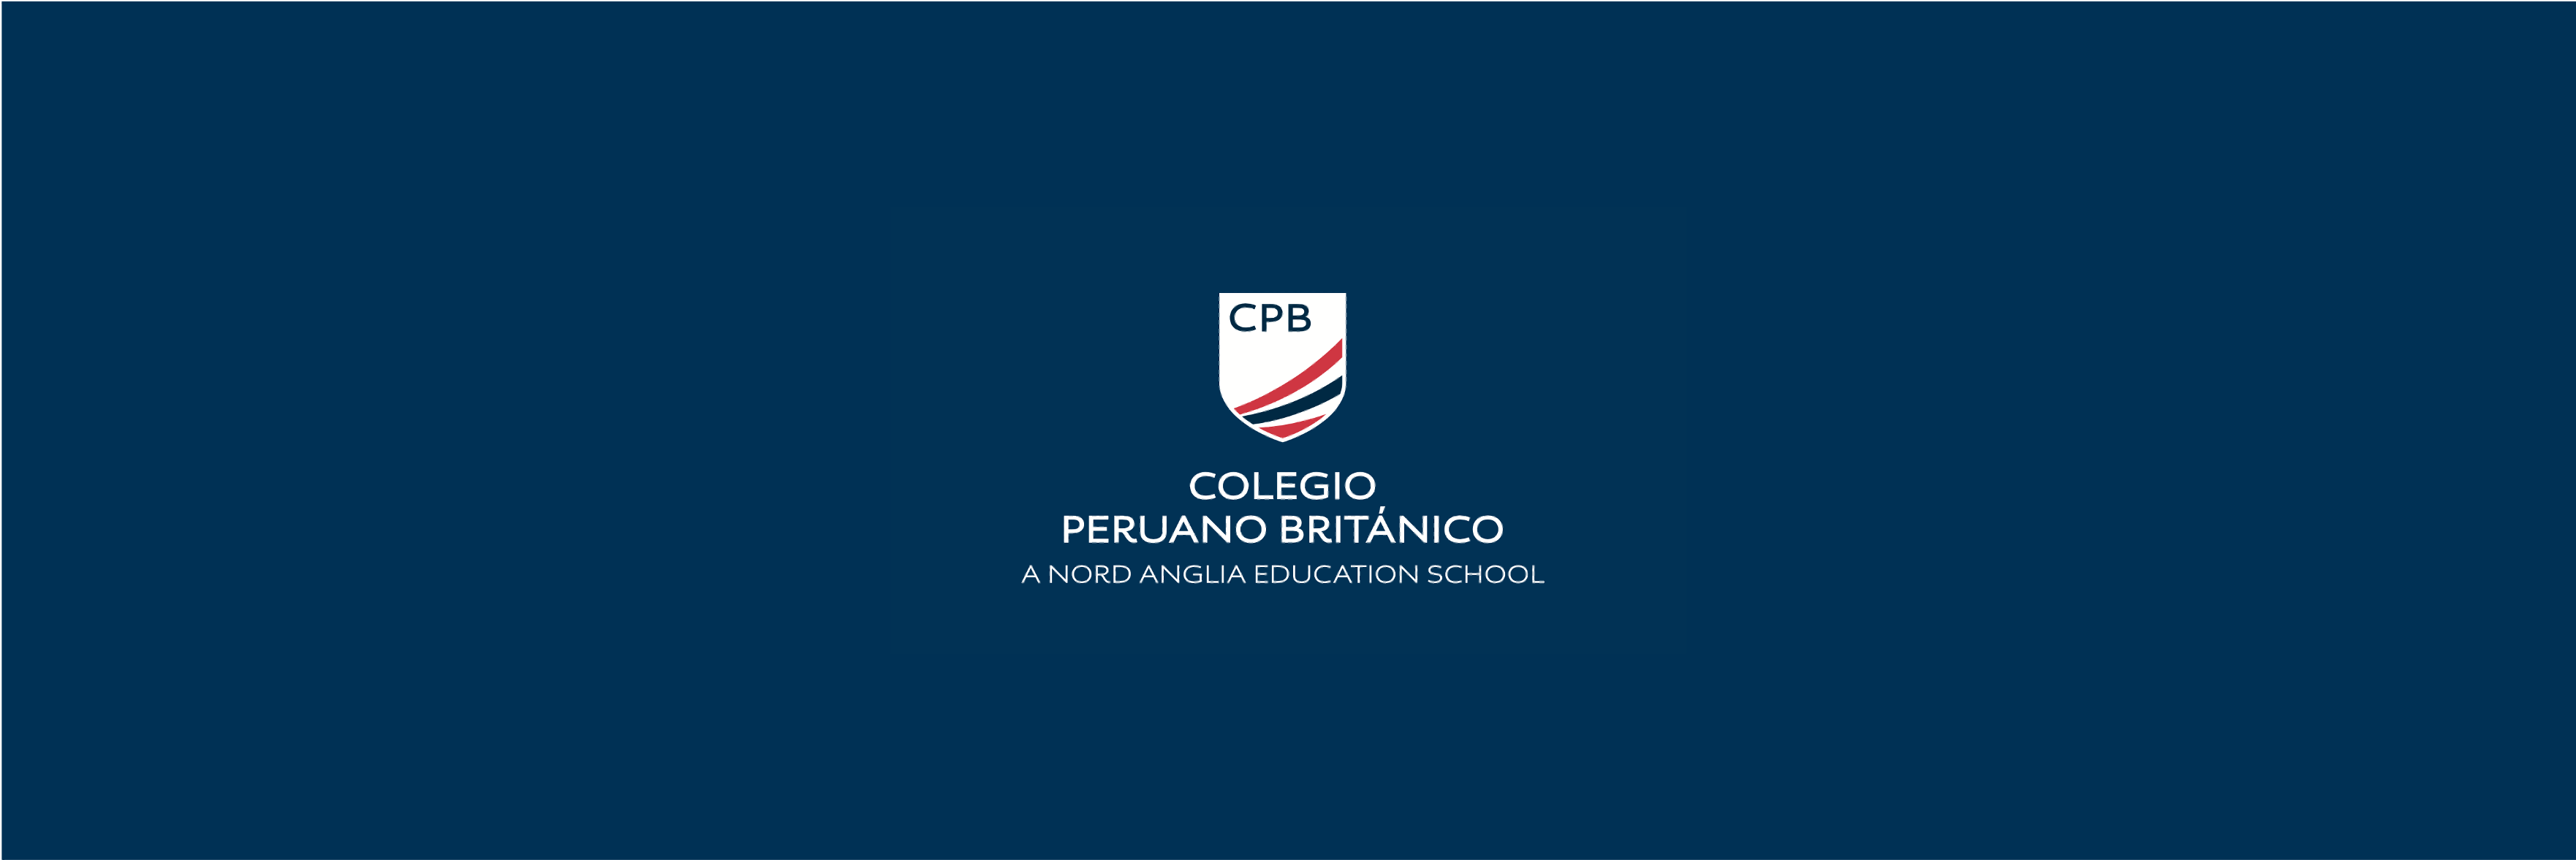 Requisitos y admisión | Colegio Peruano Británico-Content Page Header-Image